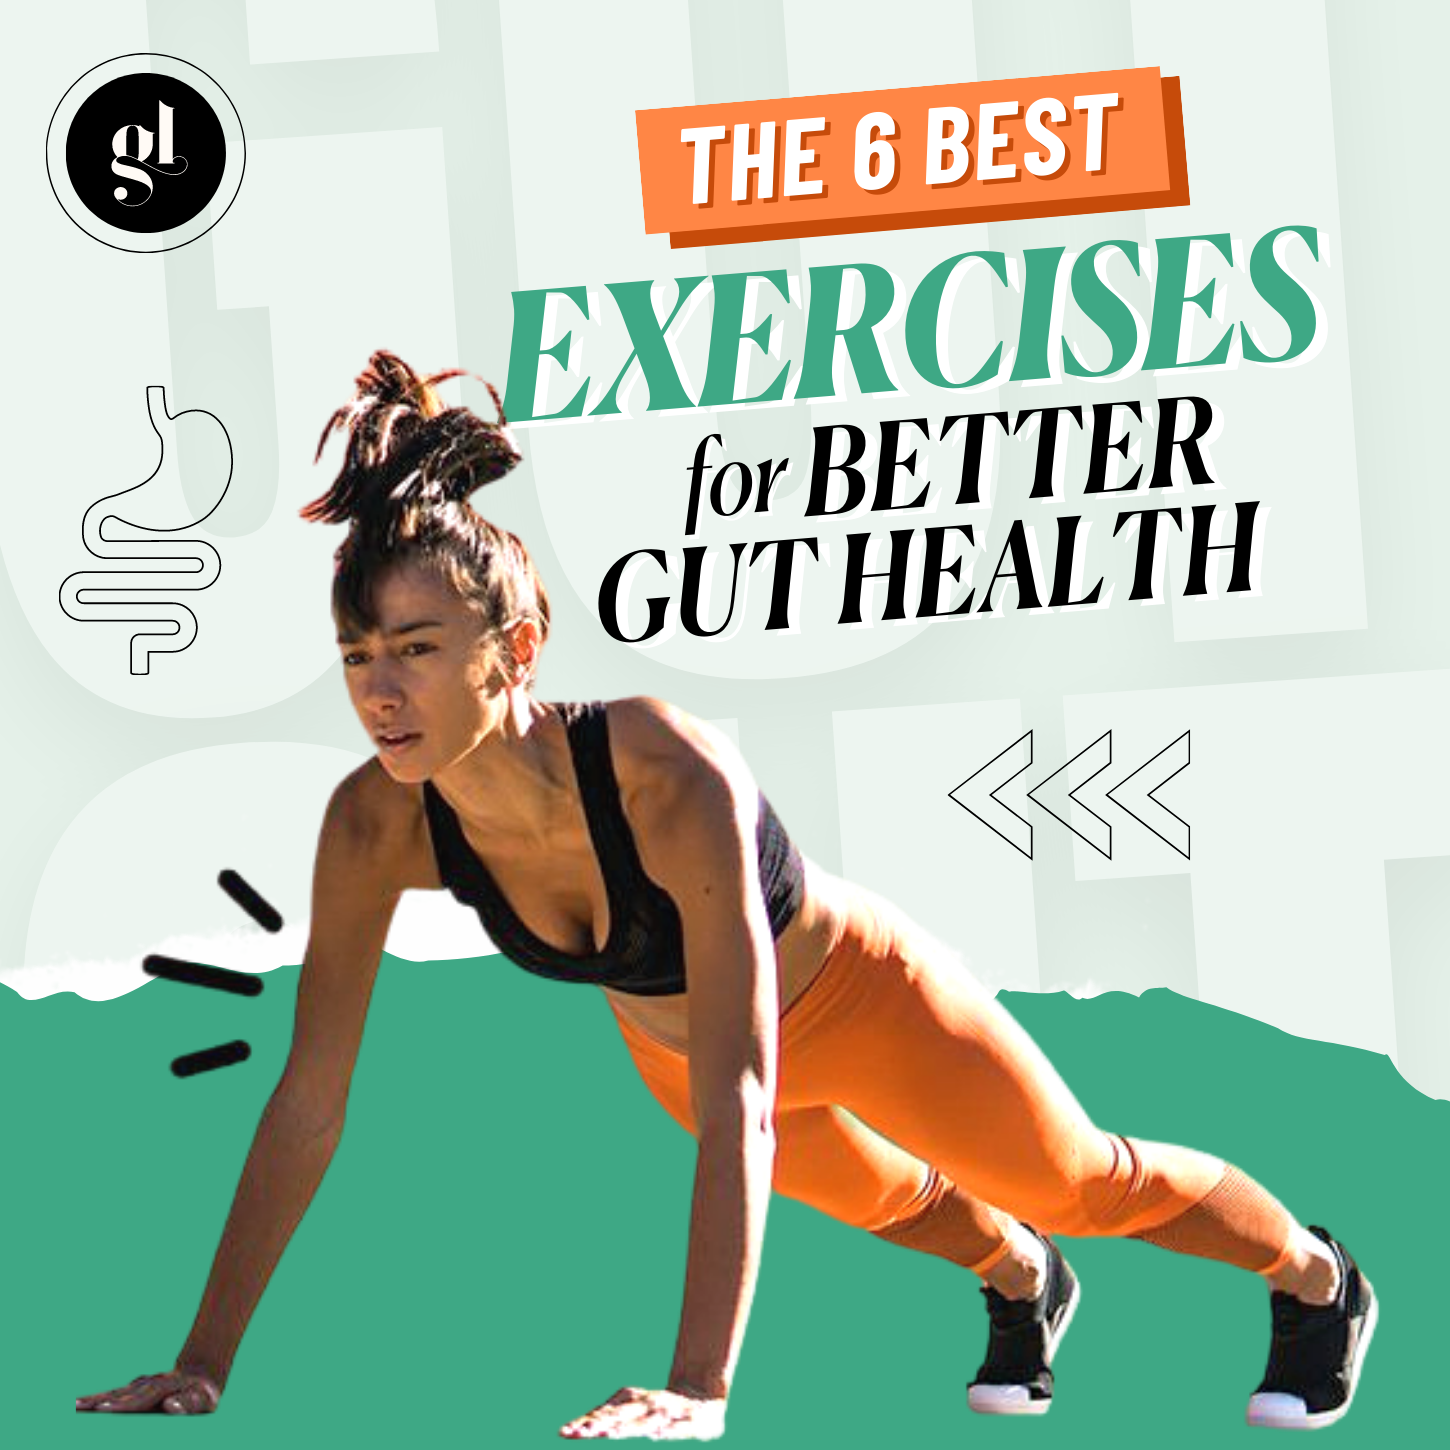 The 6 Best Exercises for Better Gut Health